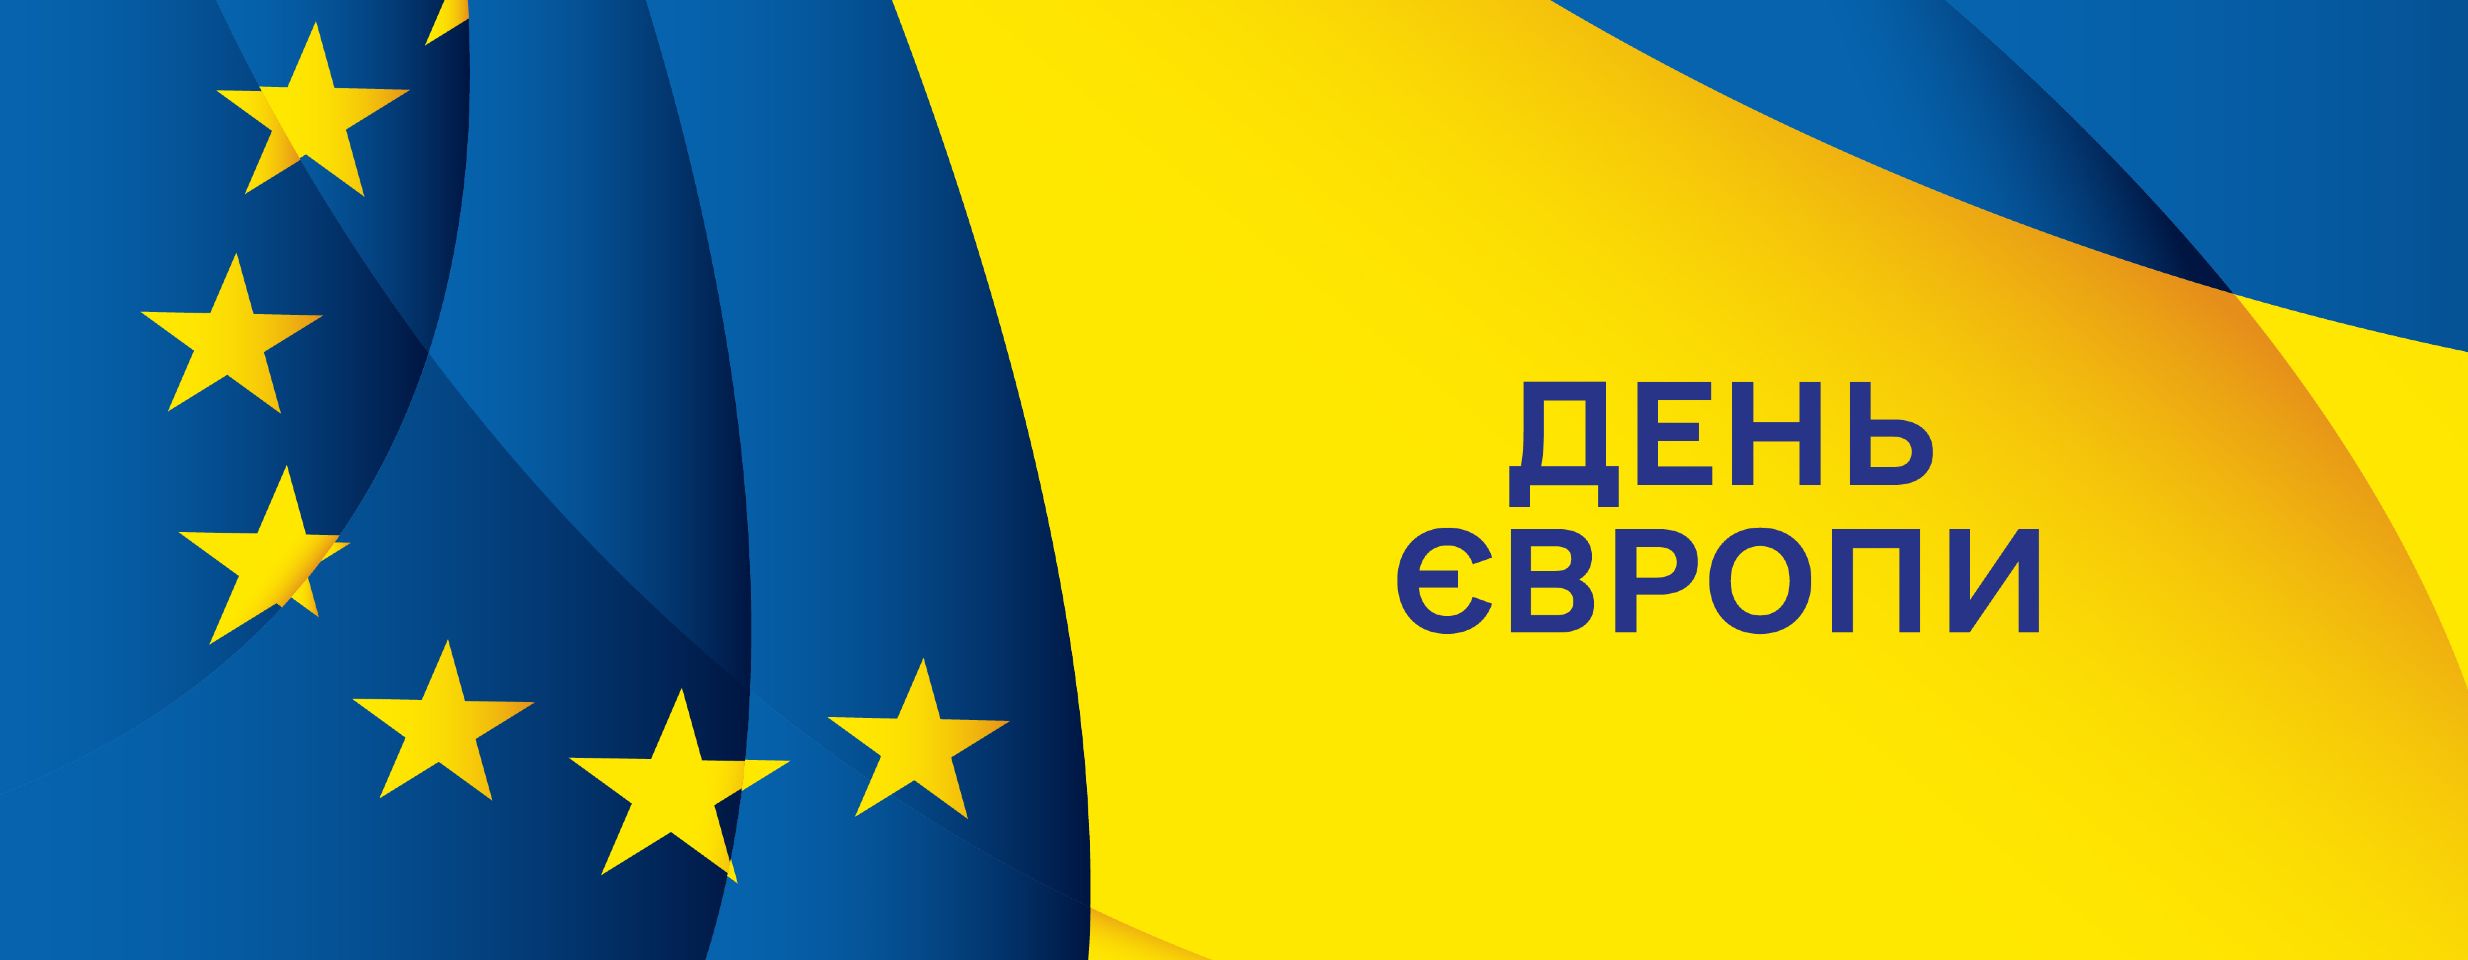 9 травня Україна відзначає День Європи разом з ЄС